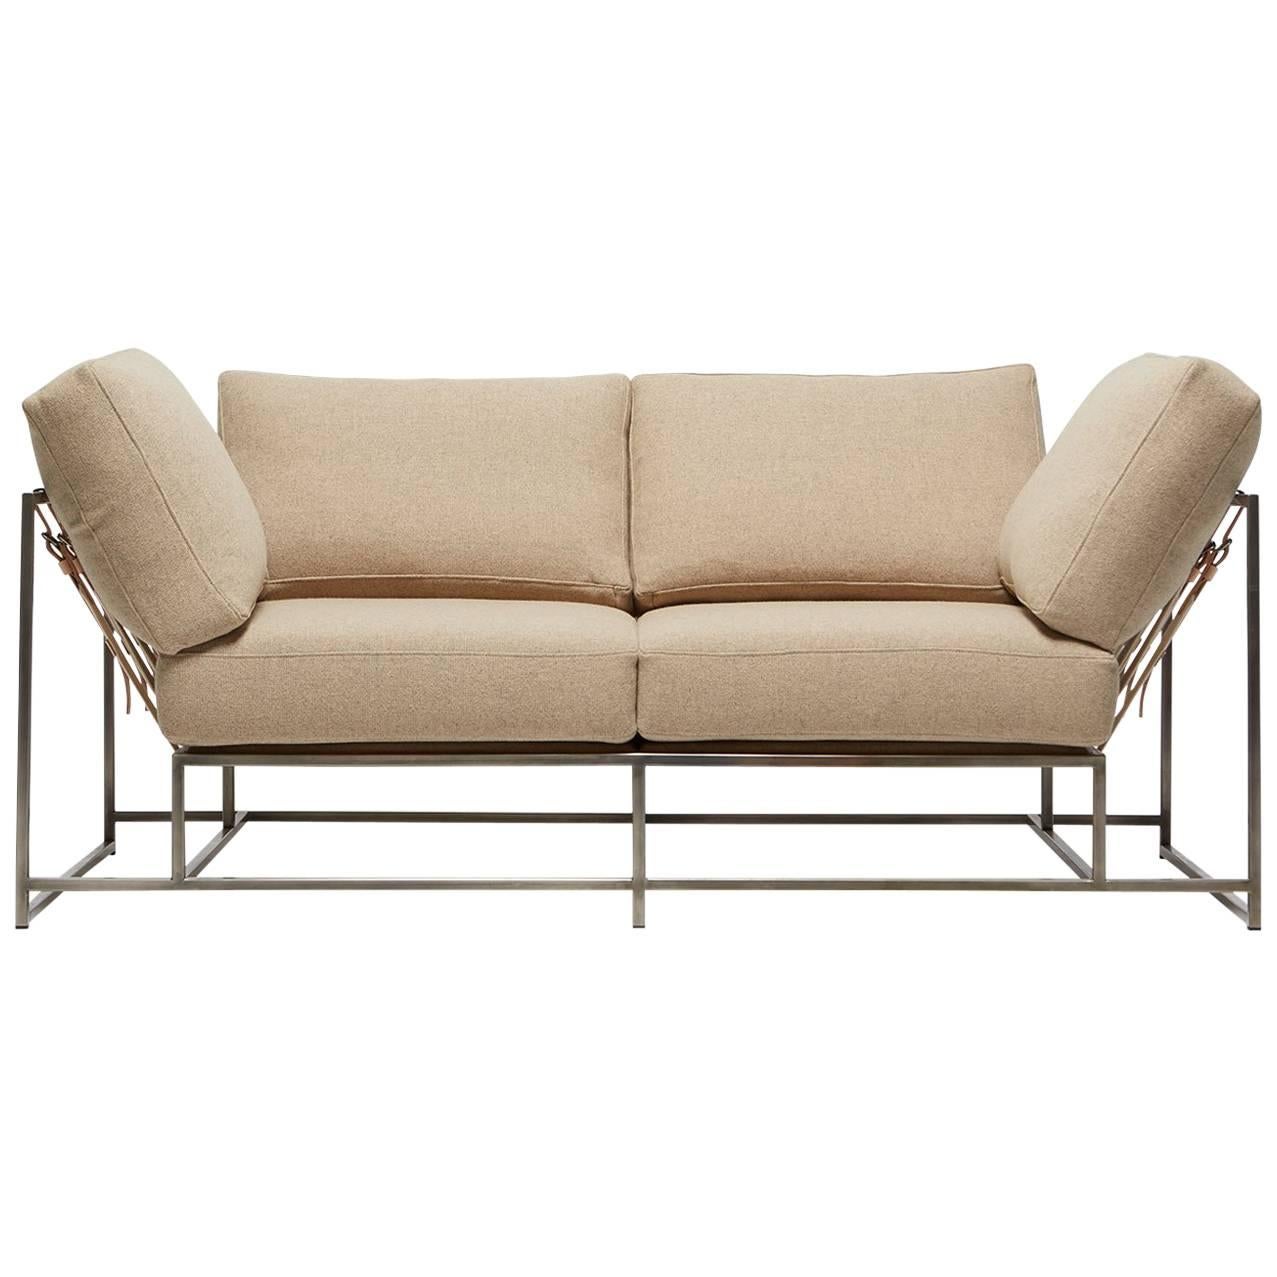 Zweisitziges Sofa aus hellbrauner Wolle und antikem Nickel